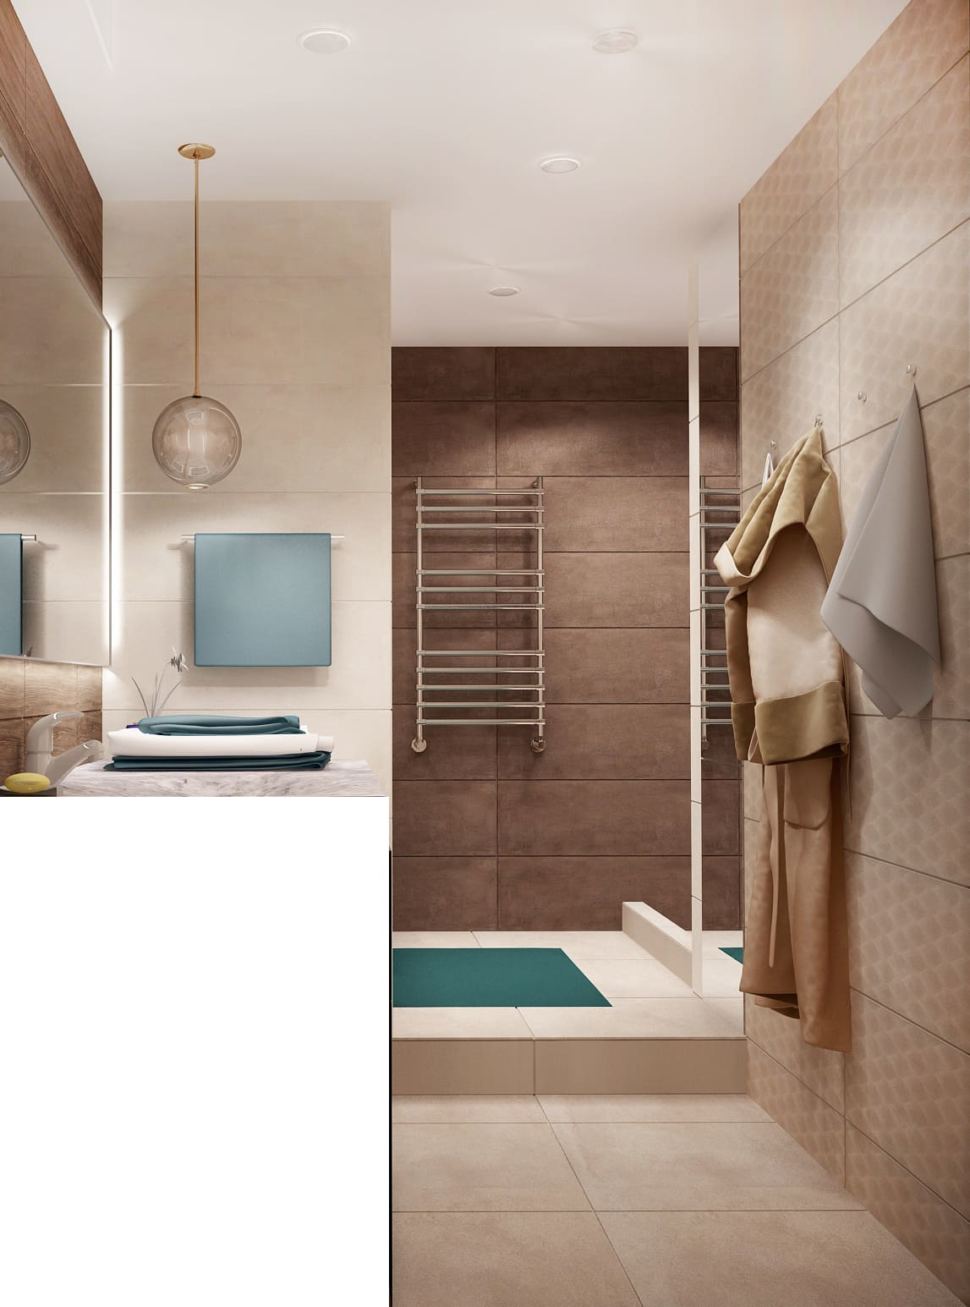 Визуализация ванной 7 кв.м в древесных тонах с бежевыми оттенками, зеркало, бежевая тумба, сушилка, раковина, подвесной светильник, ванная